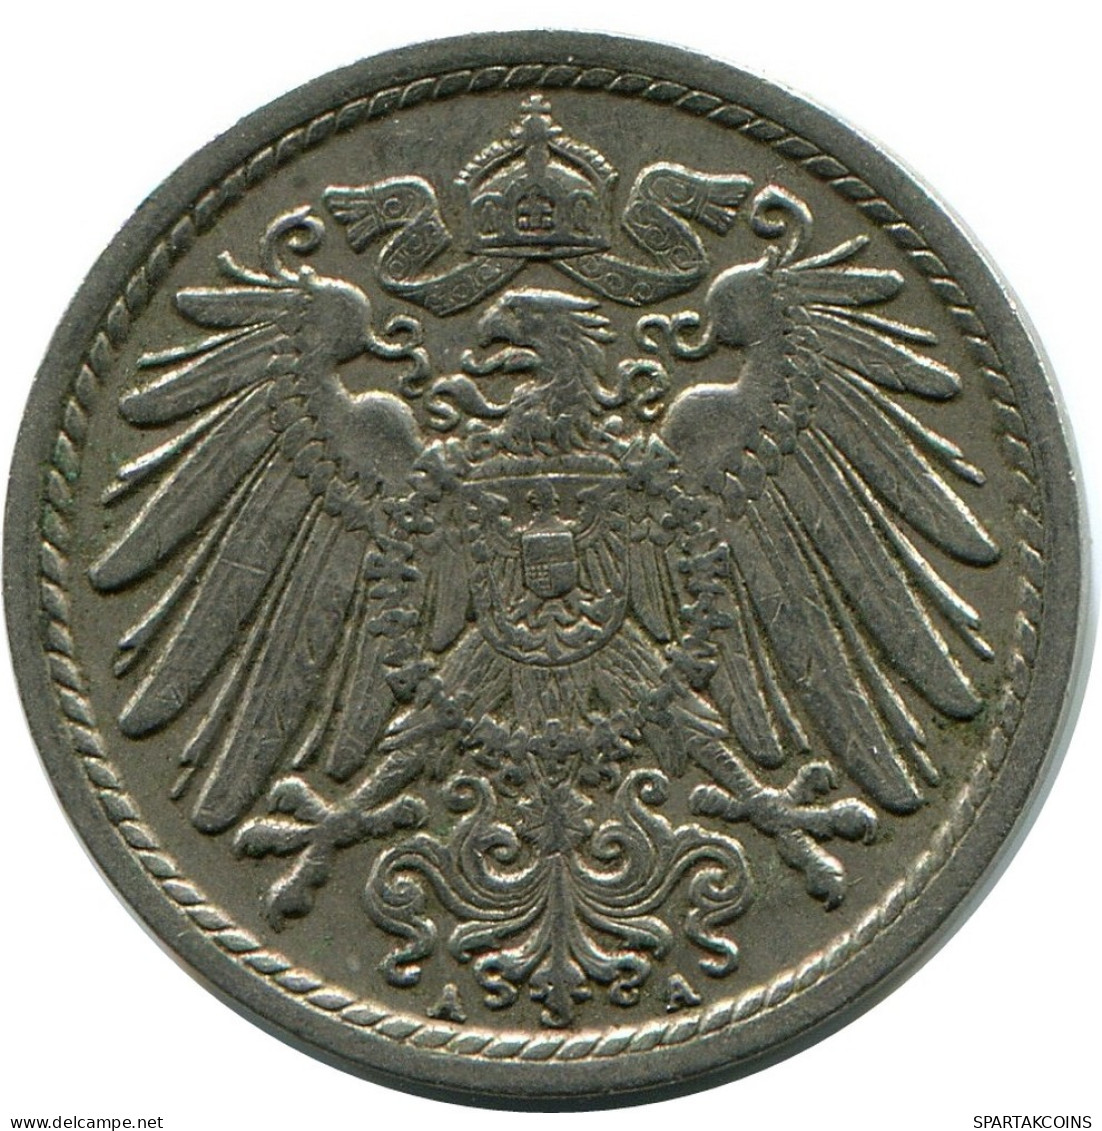 5 PFENNIG 1914 A GERMANY Coin #DB214.U.A - 5 Pfennig